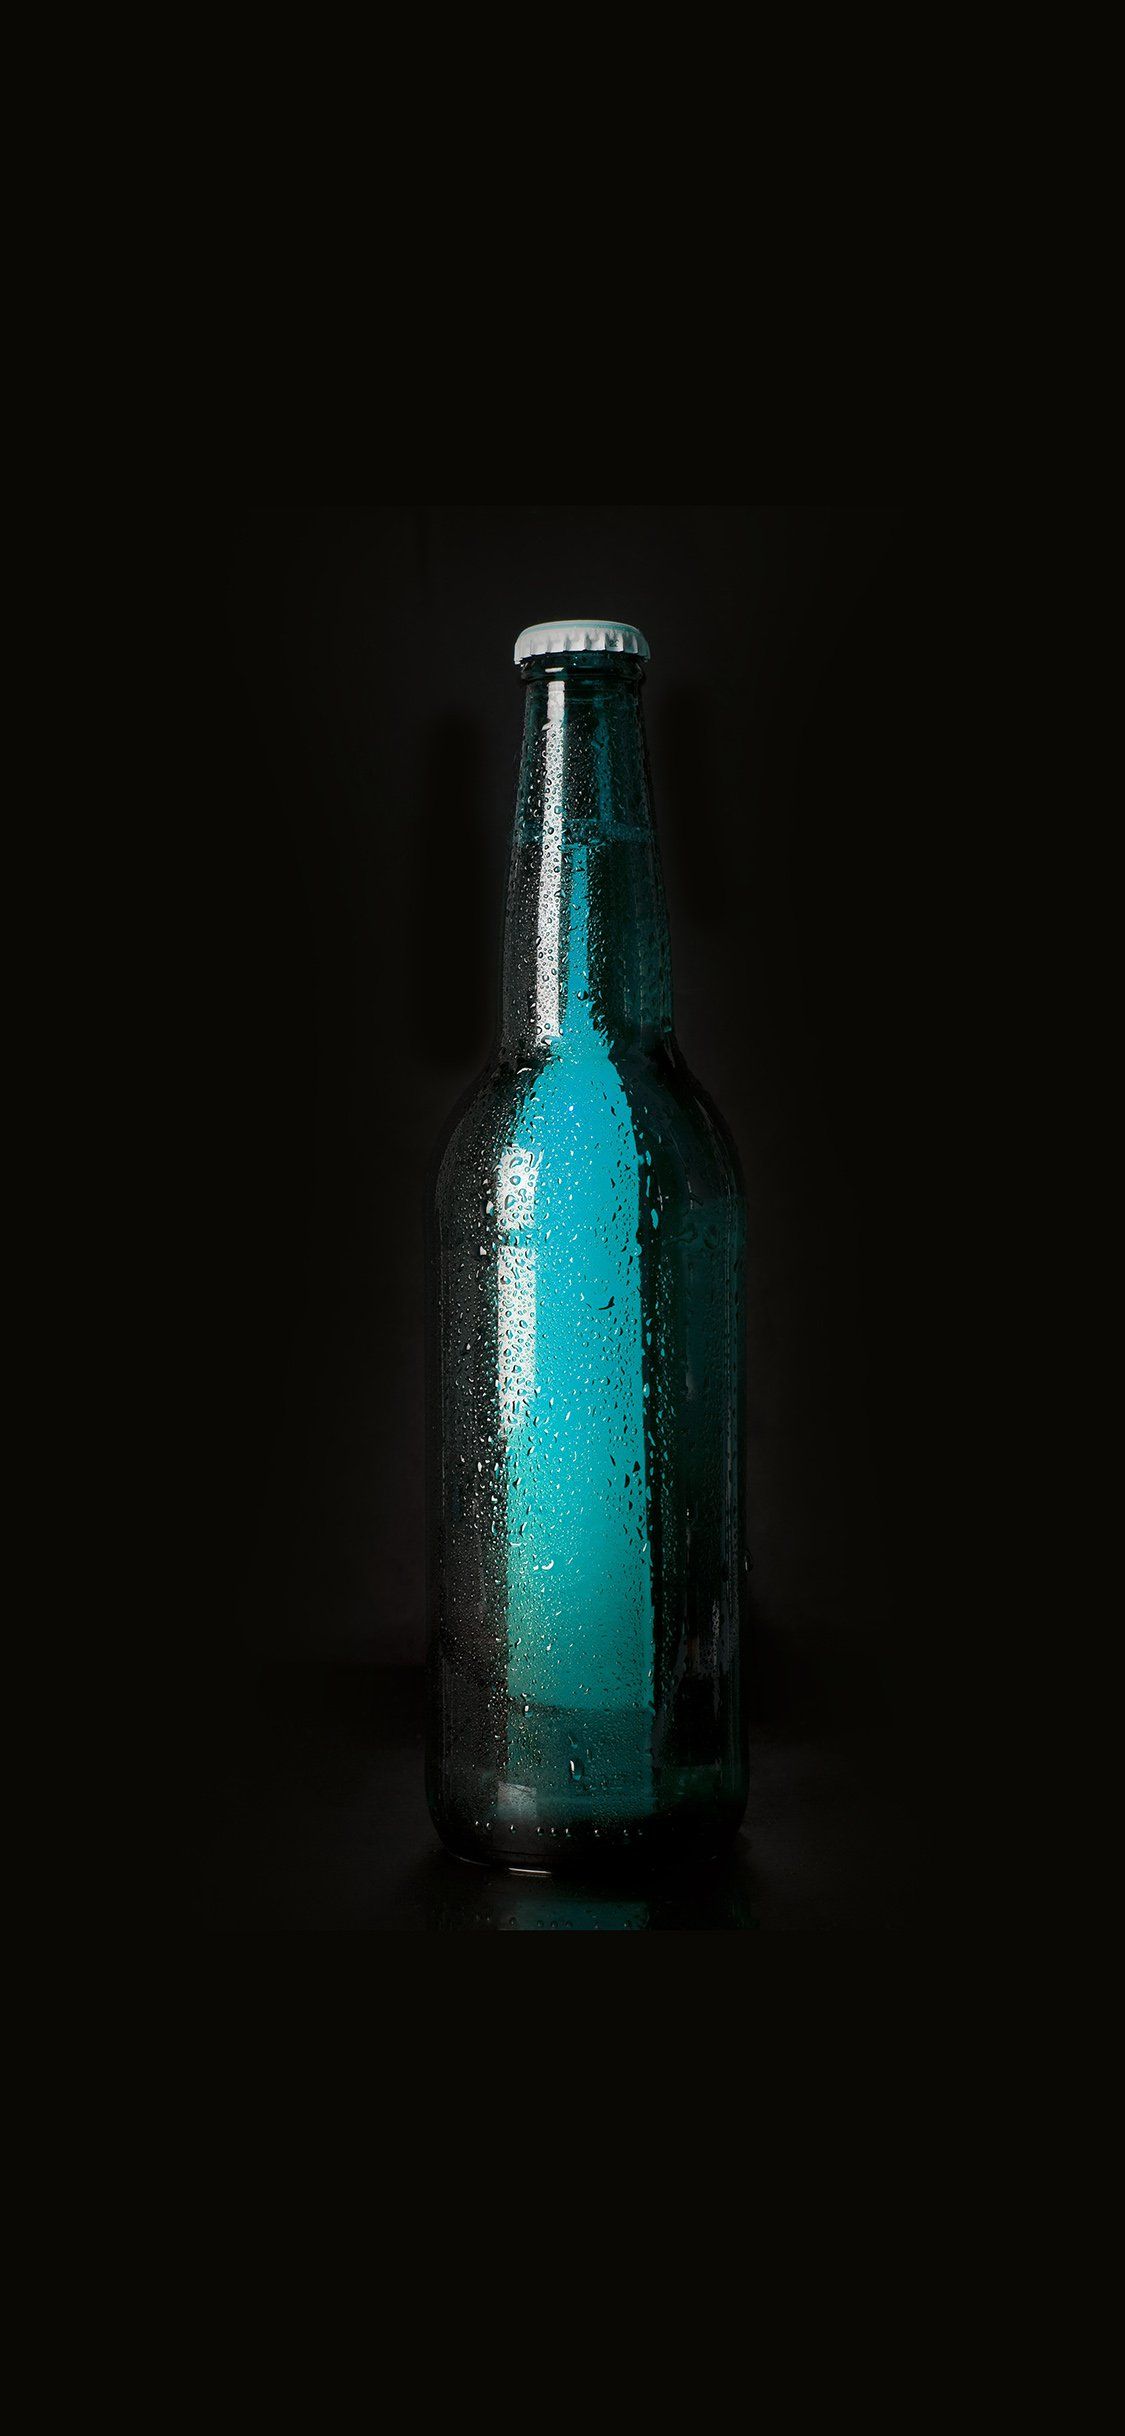 Beer bottles art iPhone X Wallpaper Free Download